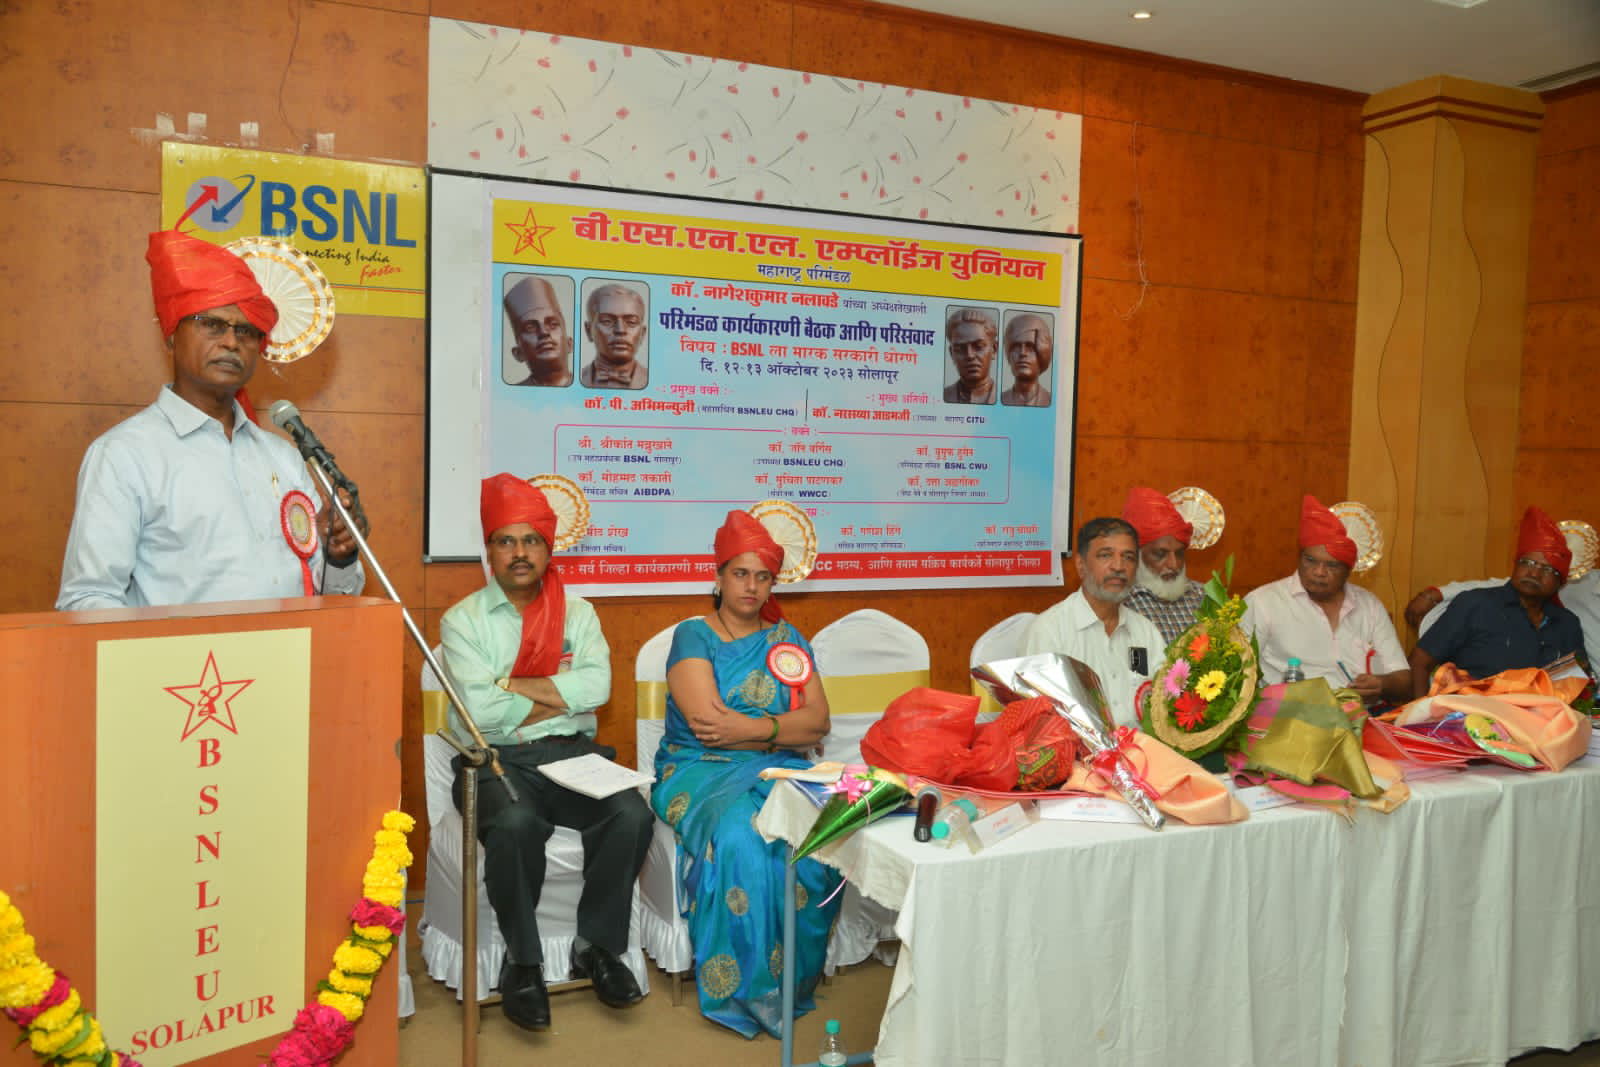 *BSNLEU महाराष्ट्र परिमंडळ कार्यकारणीची बैठक 12 व 13 ऑक्टोबरला सोलापूर येथे उत्साहात पार पडली.*   Image 